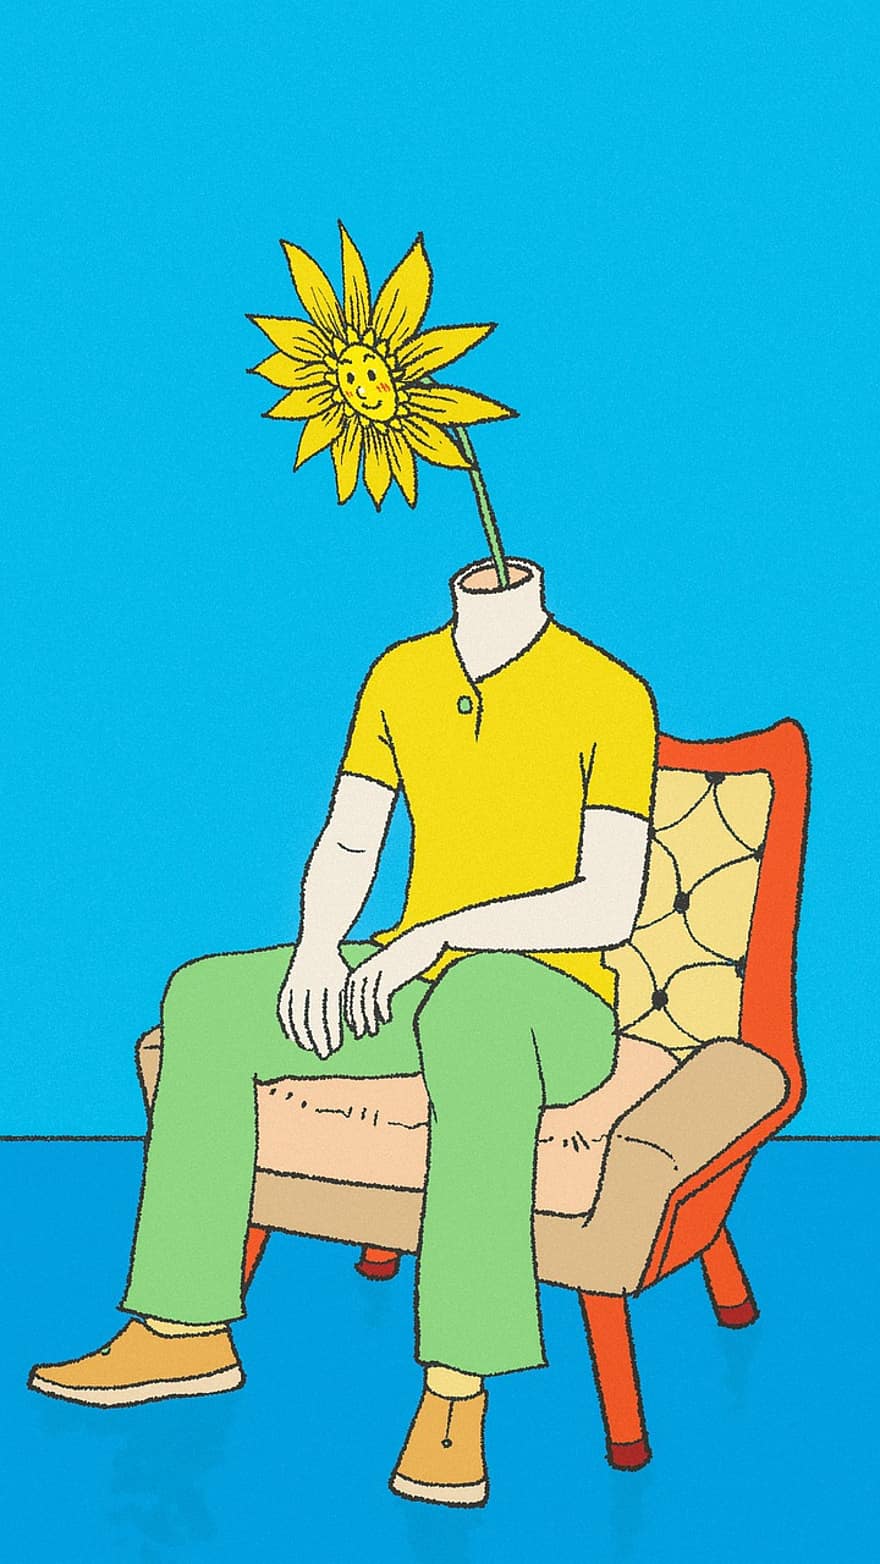 obraz, kreatywność, głowa, słonecznik, krzesło, Czekanie, niebieski obraz, niebieska farba, Niebieski słonecznik